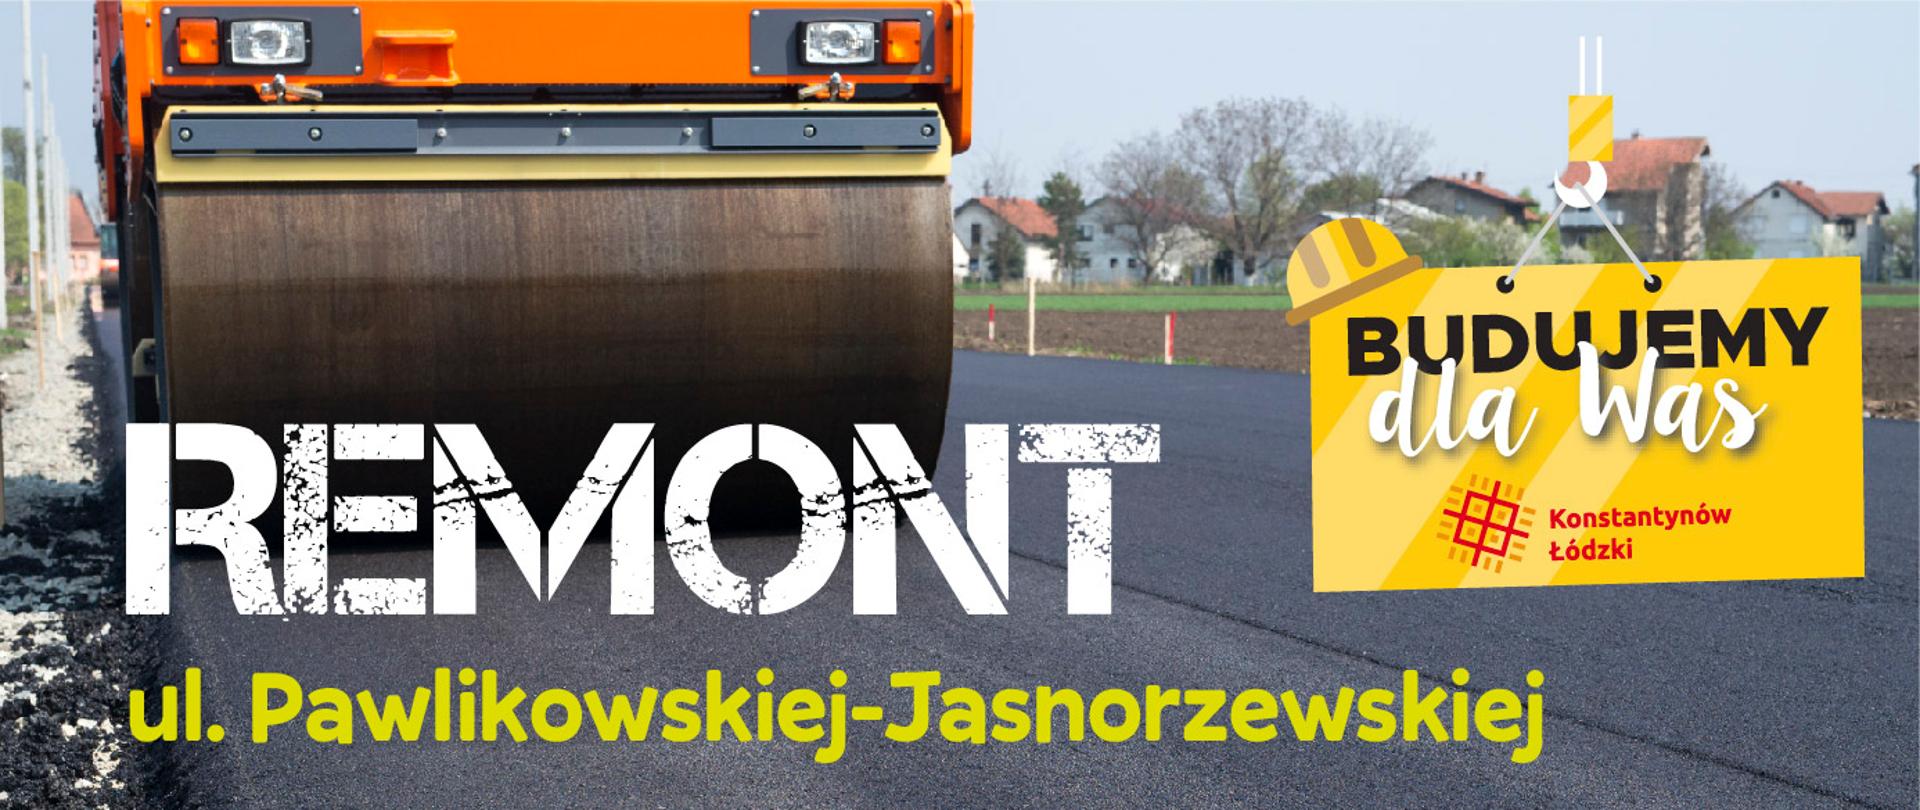 Maszyna drogowa, napis remont ul. Pawlikowskiej-Jasnorzewskiej